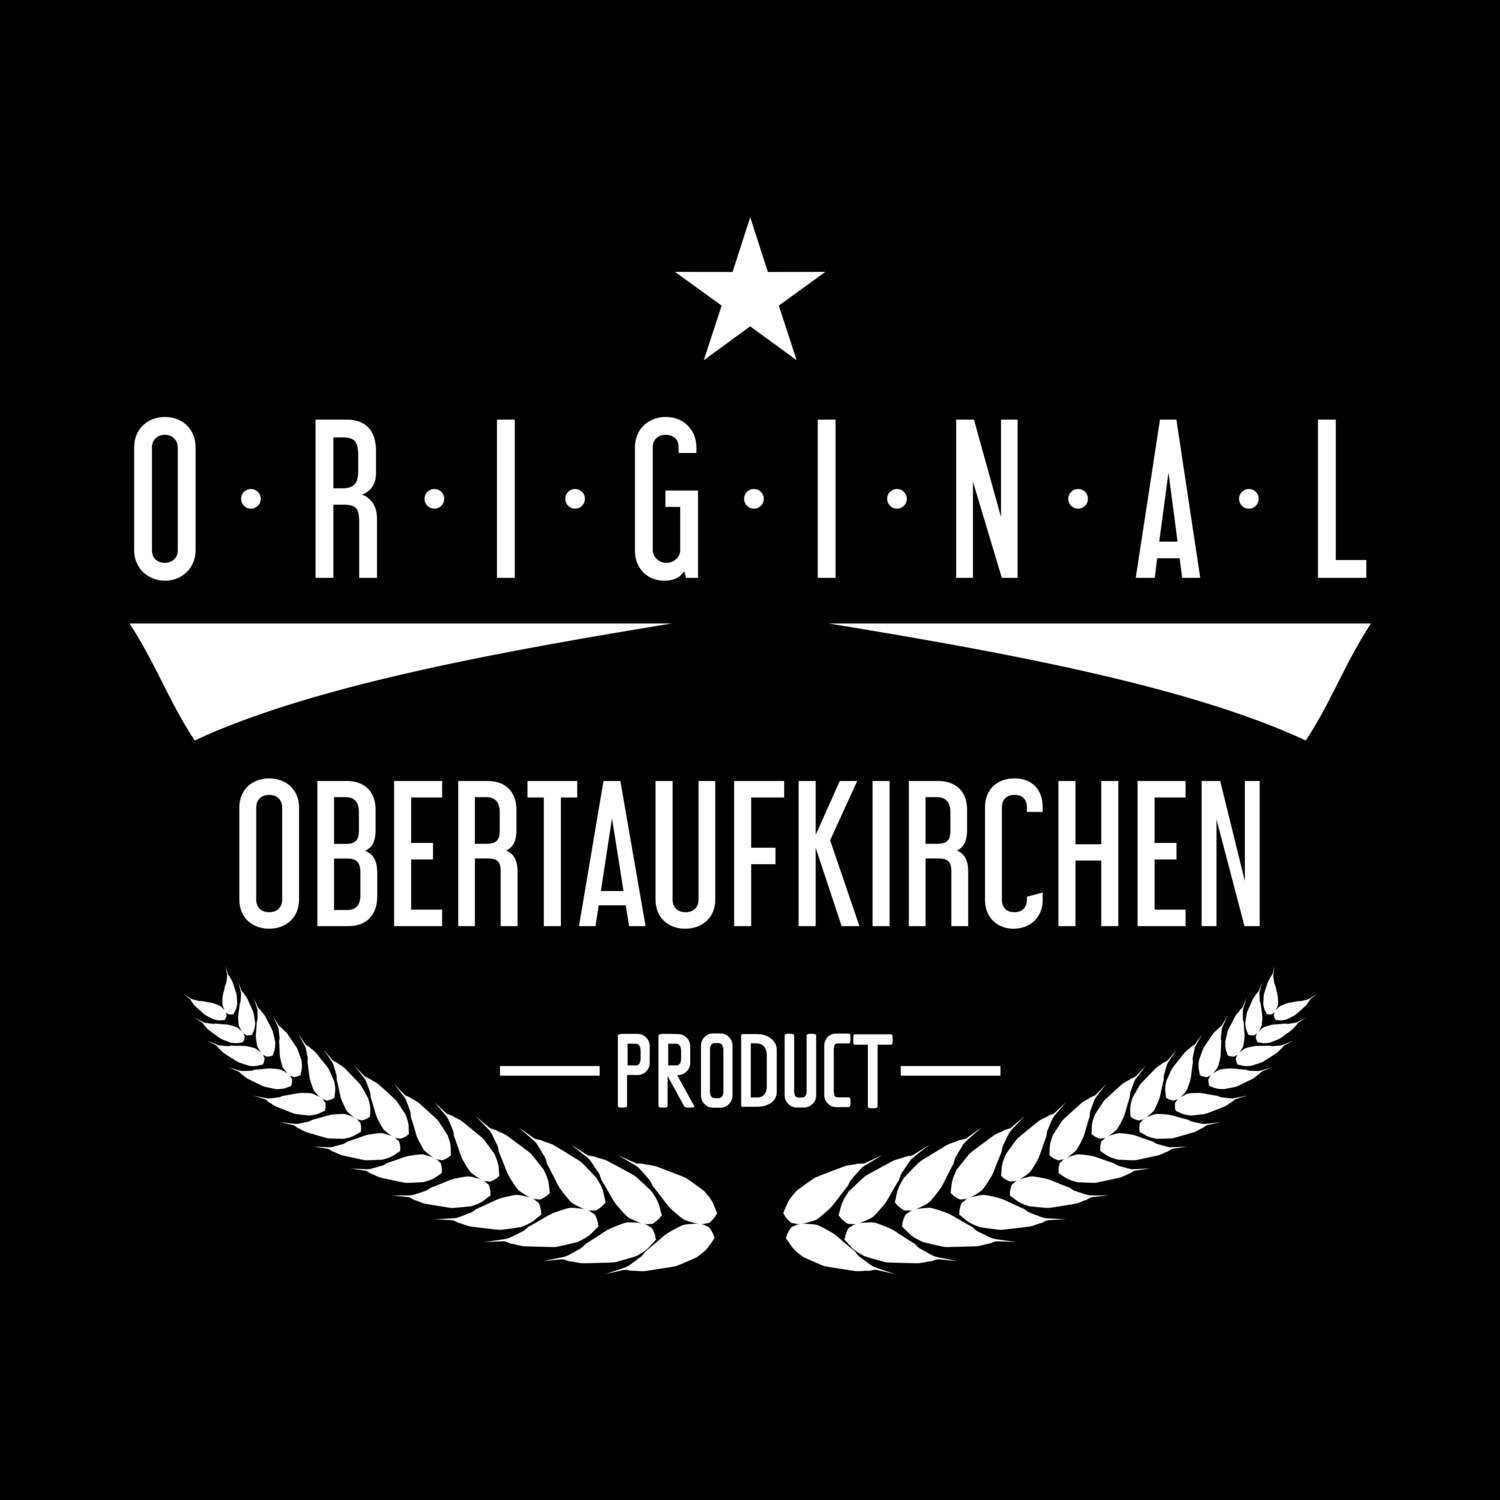 Obertaufkirchen T-Shirt »Original Product«